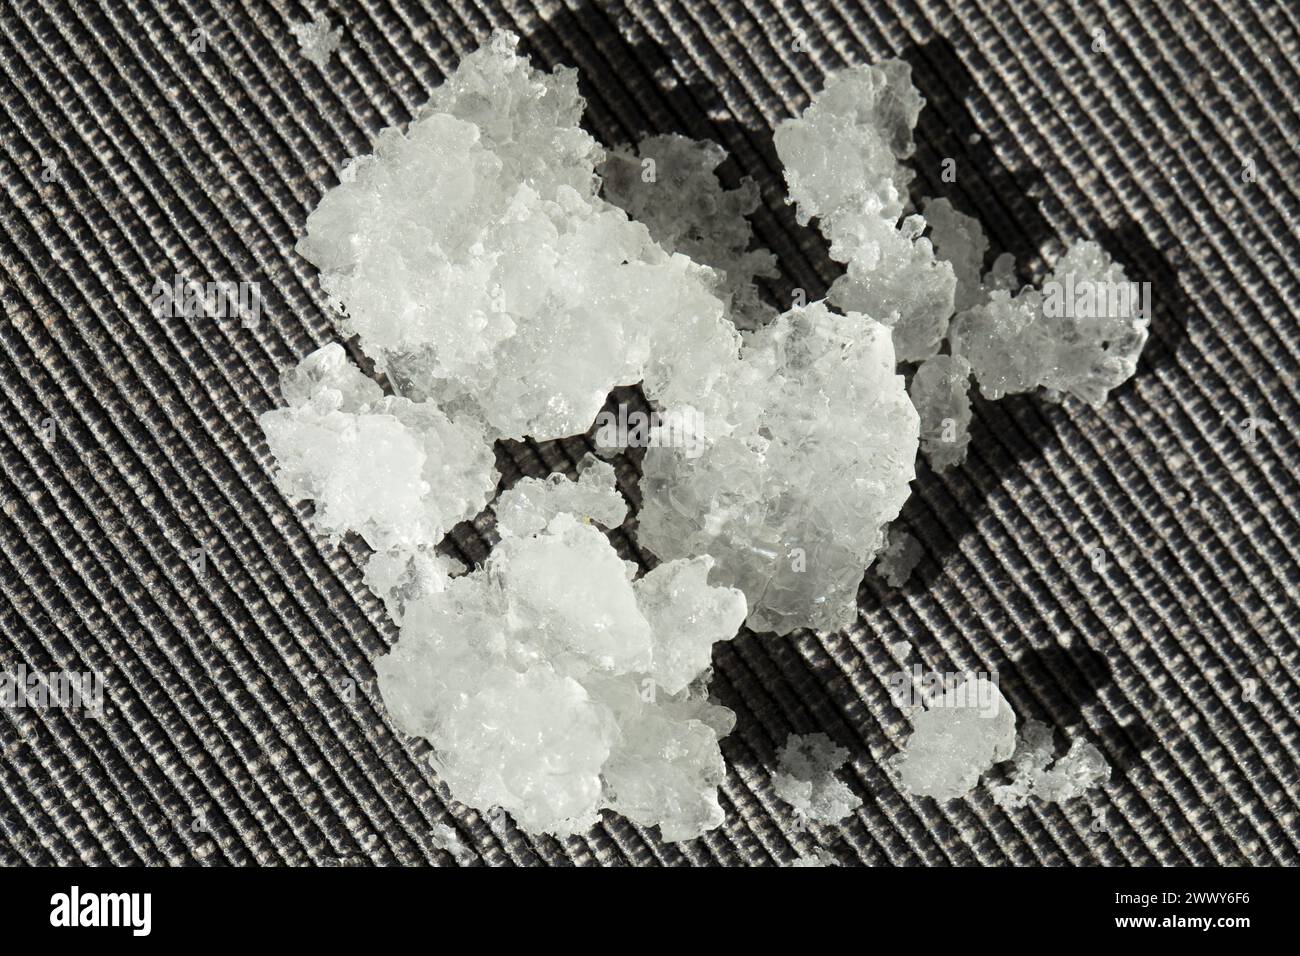 Gewachsene Kristalle in hellem Licht. Kaliumpyrosulfit. Eine Substanz, die in der Lebensmittelindustrie verwendet wird. Konservierungsmittel. Stockfoto